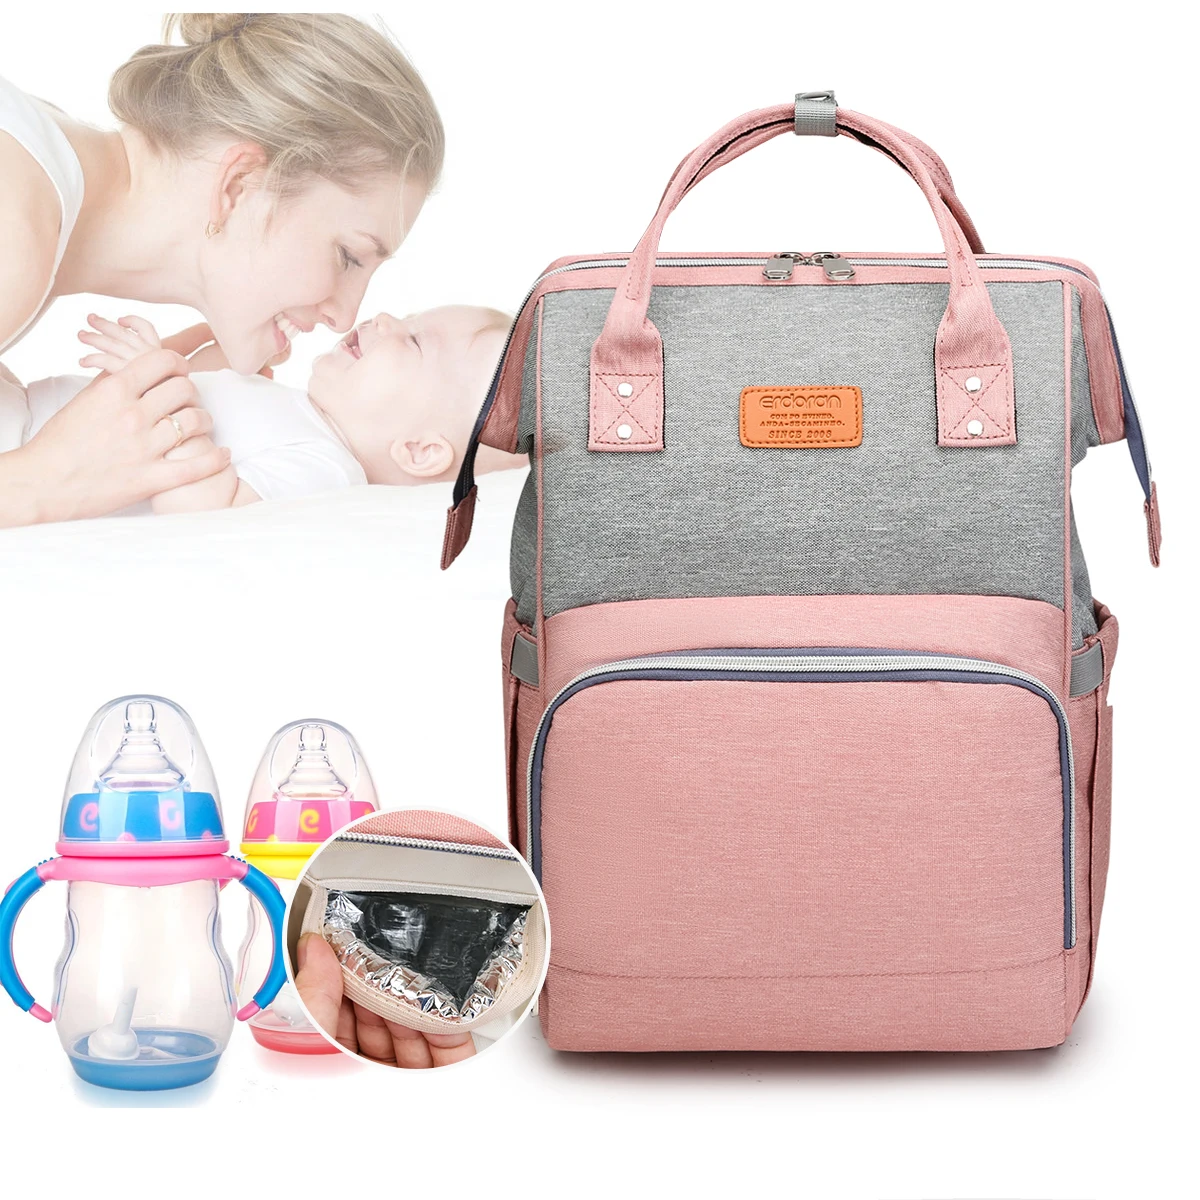 Sacs de maternité chaude maman poussette sac à couches sac à dos multifonction momie sac grand et imperméable bébé sac à langer cadeaux gratuits!